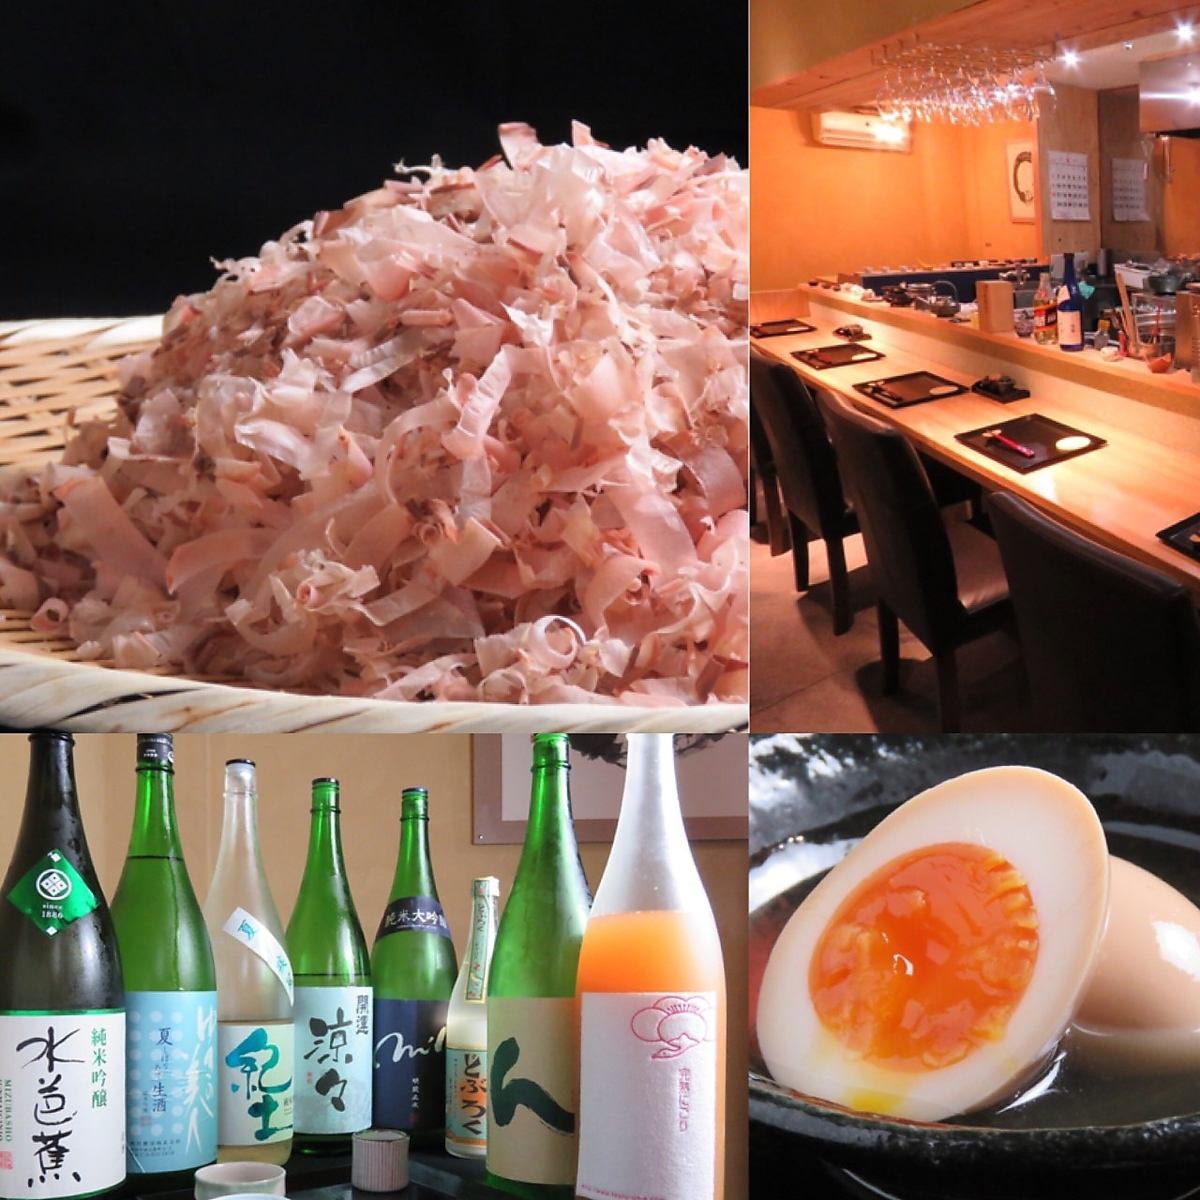 使用新鲜切碎的鲣鱼薄片制成的“鱼汤”非常美味！可以品尝关东煮和鲜鱼等优雅的日本料理的餐厅。